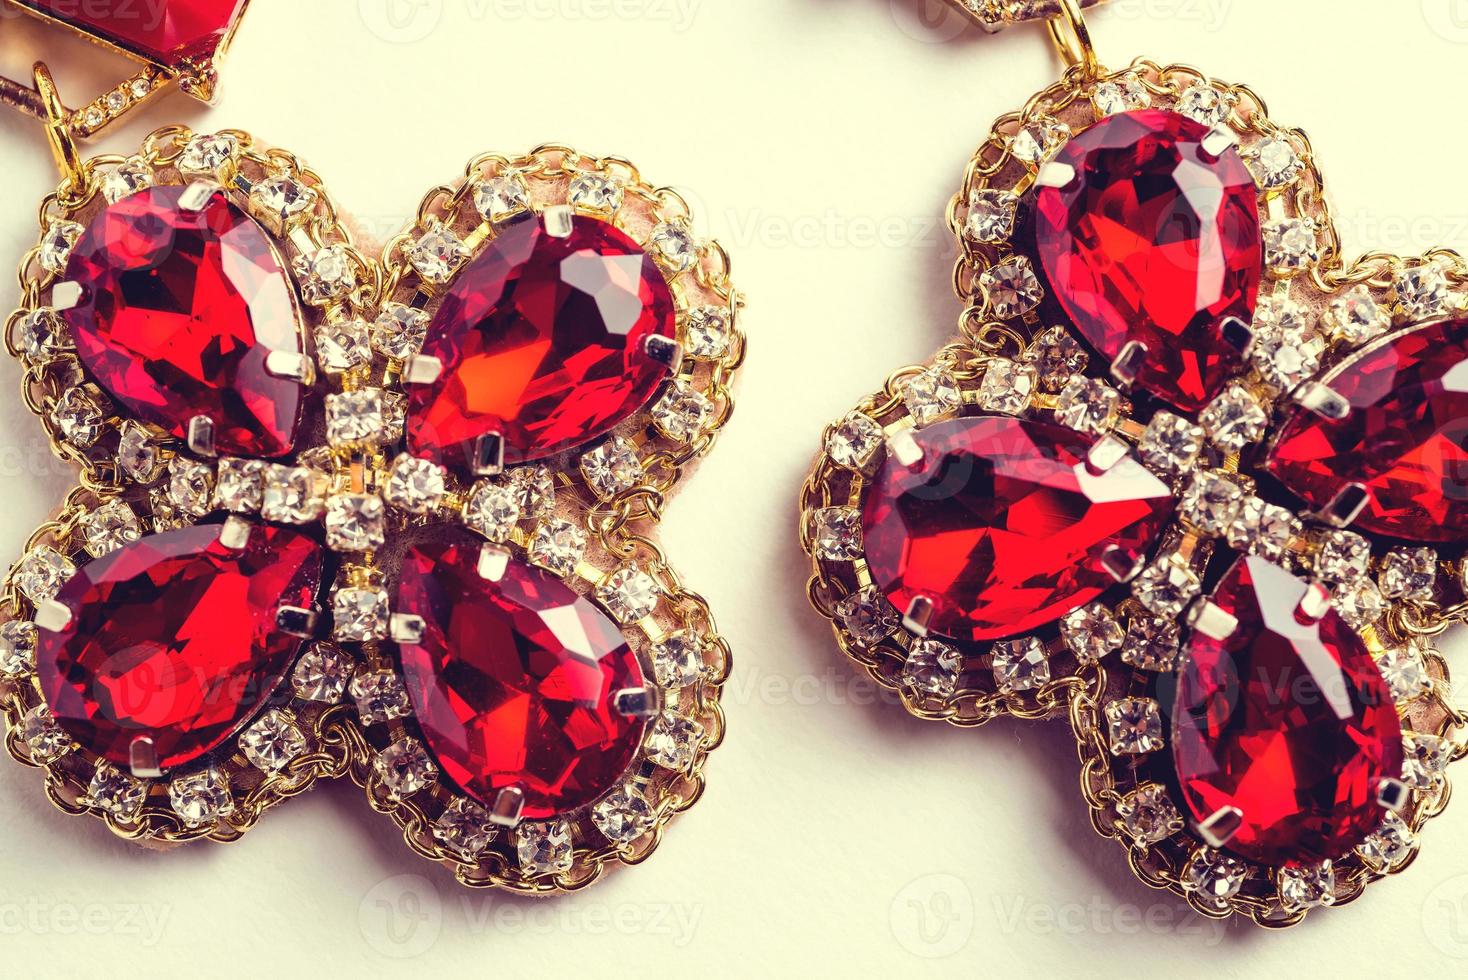 brincos vermelhos feitos à mão com joias. estilo vintage foto